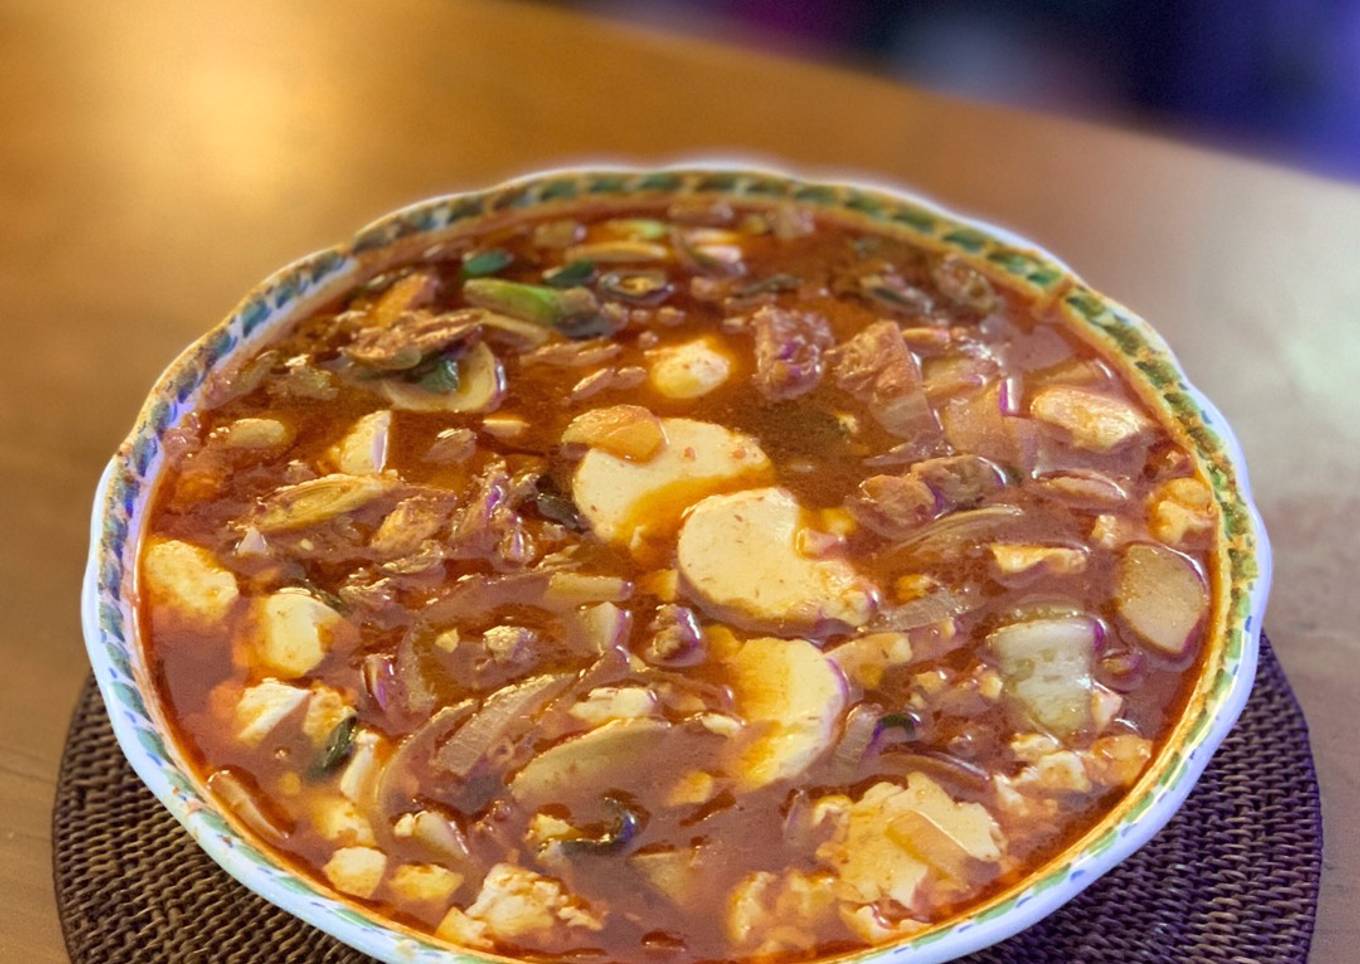 Spicy Soft Tofu Stew with meat (Gogi sudubu jjiage)